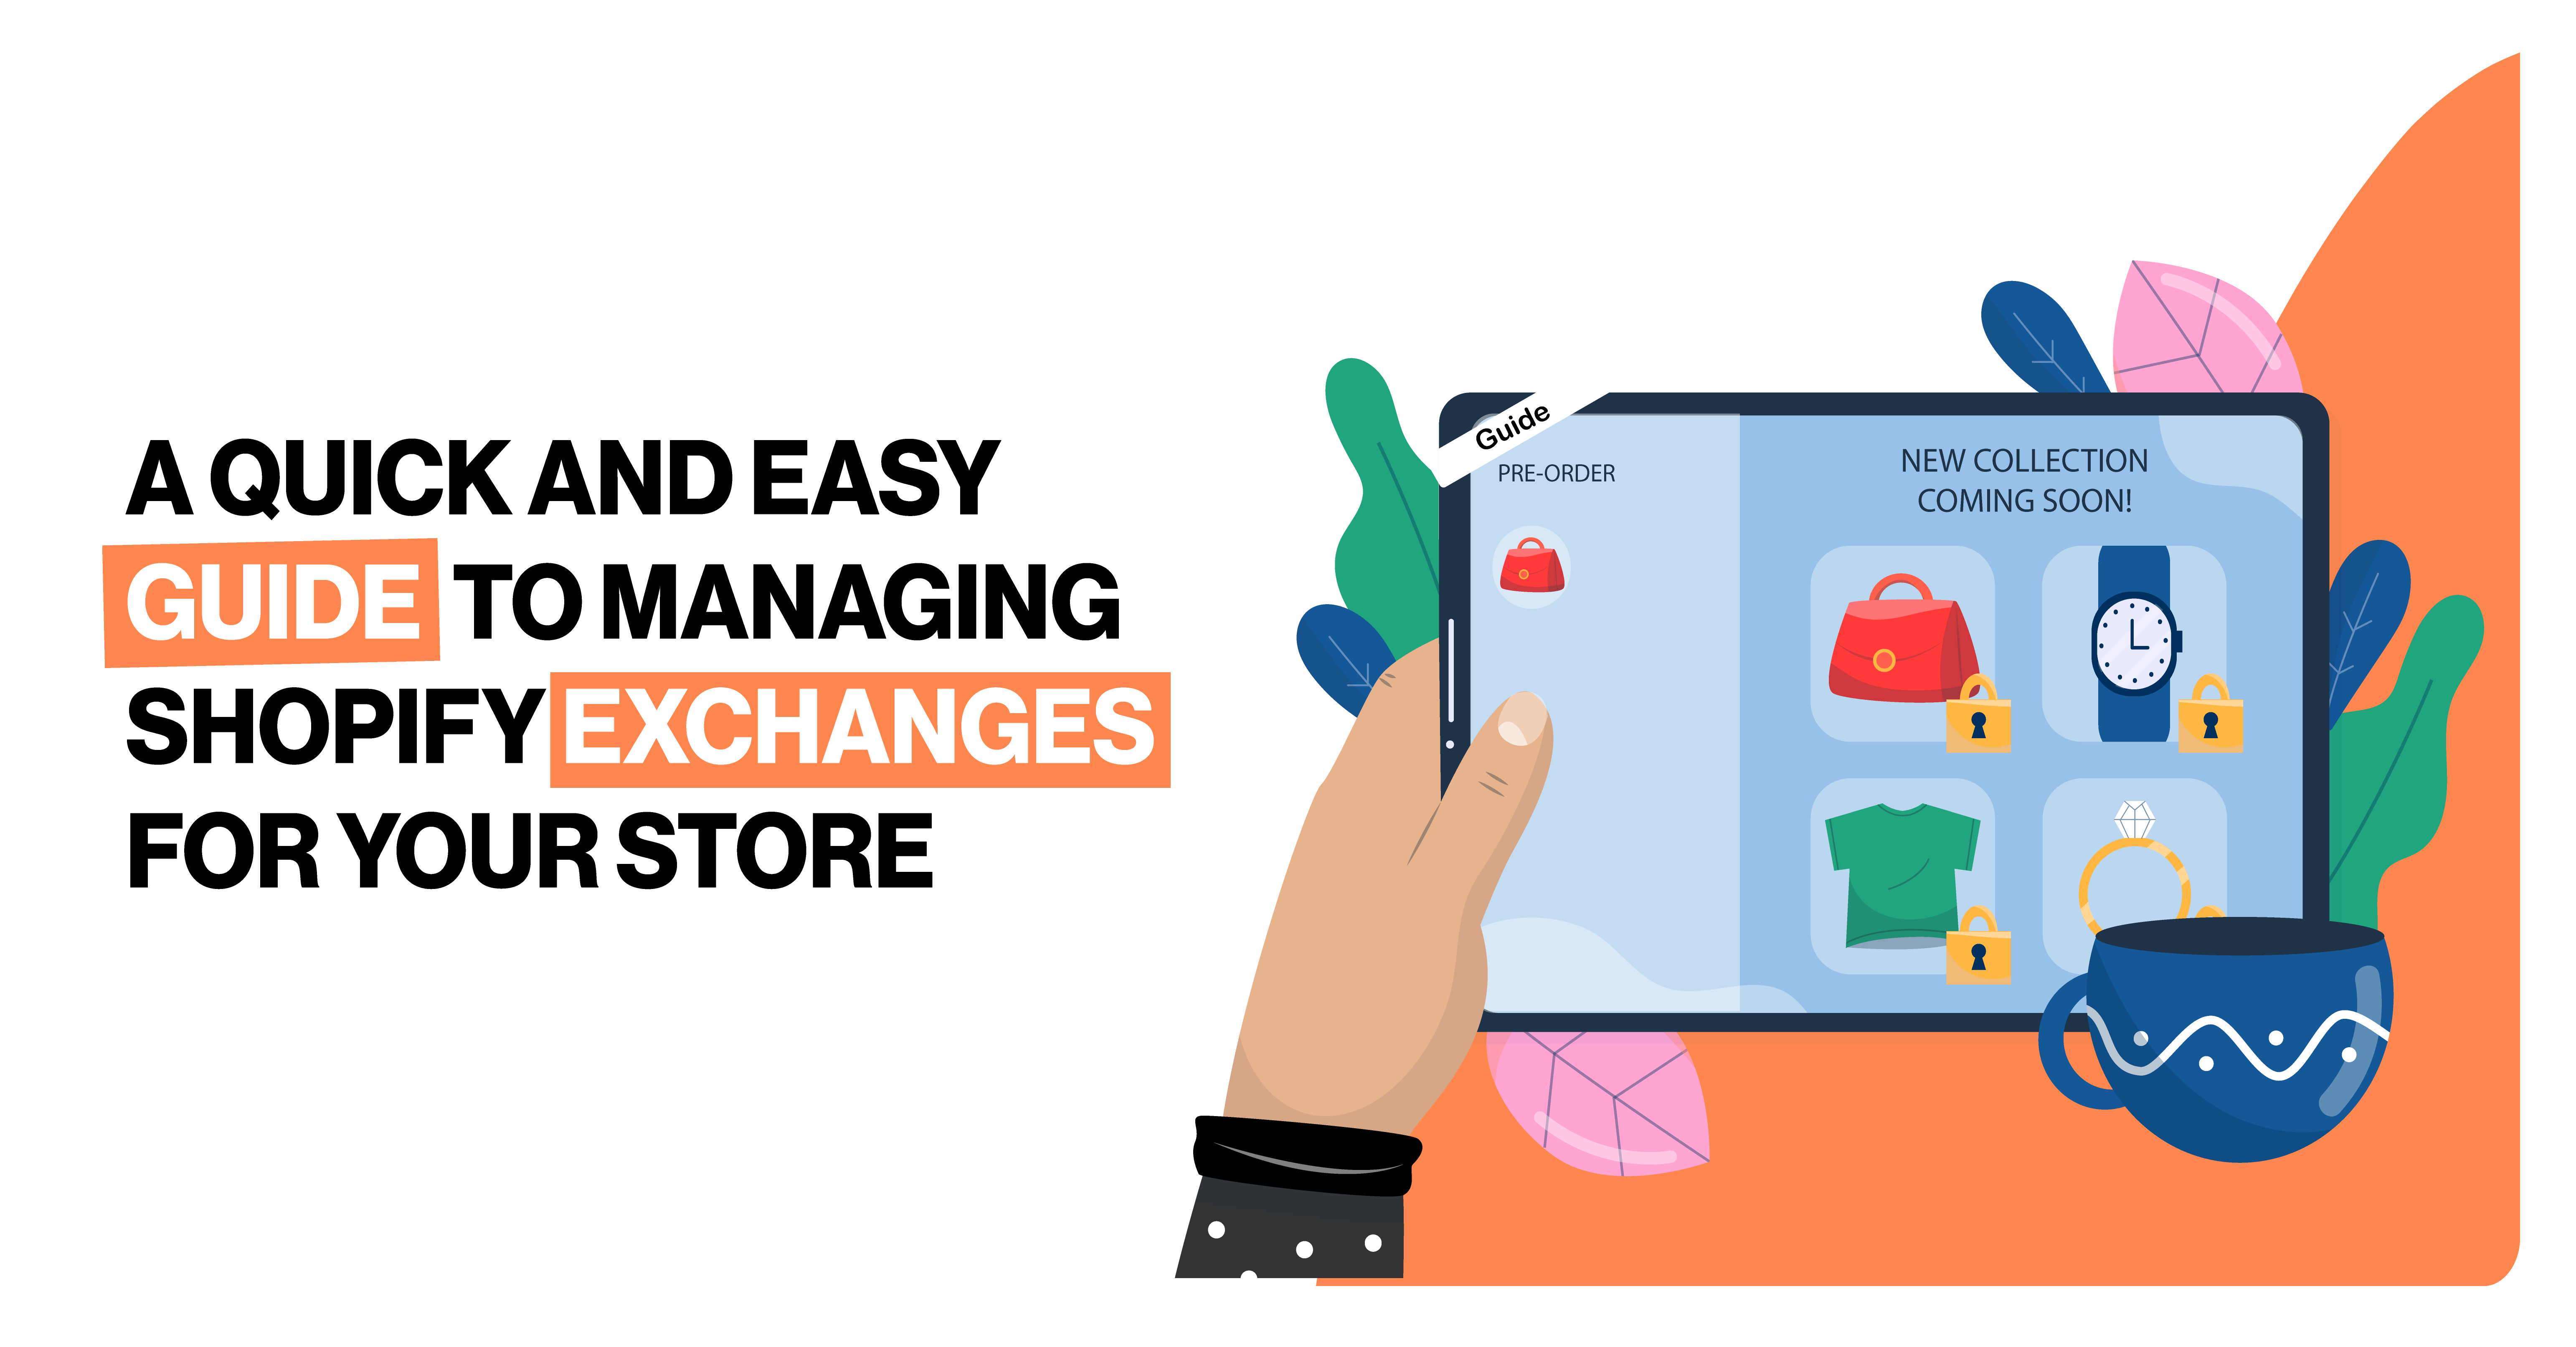 Guida facile e veloce alla gestione degli scambi su Shopify per il vostro negozio